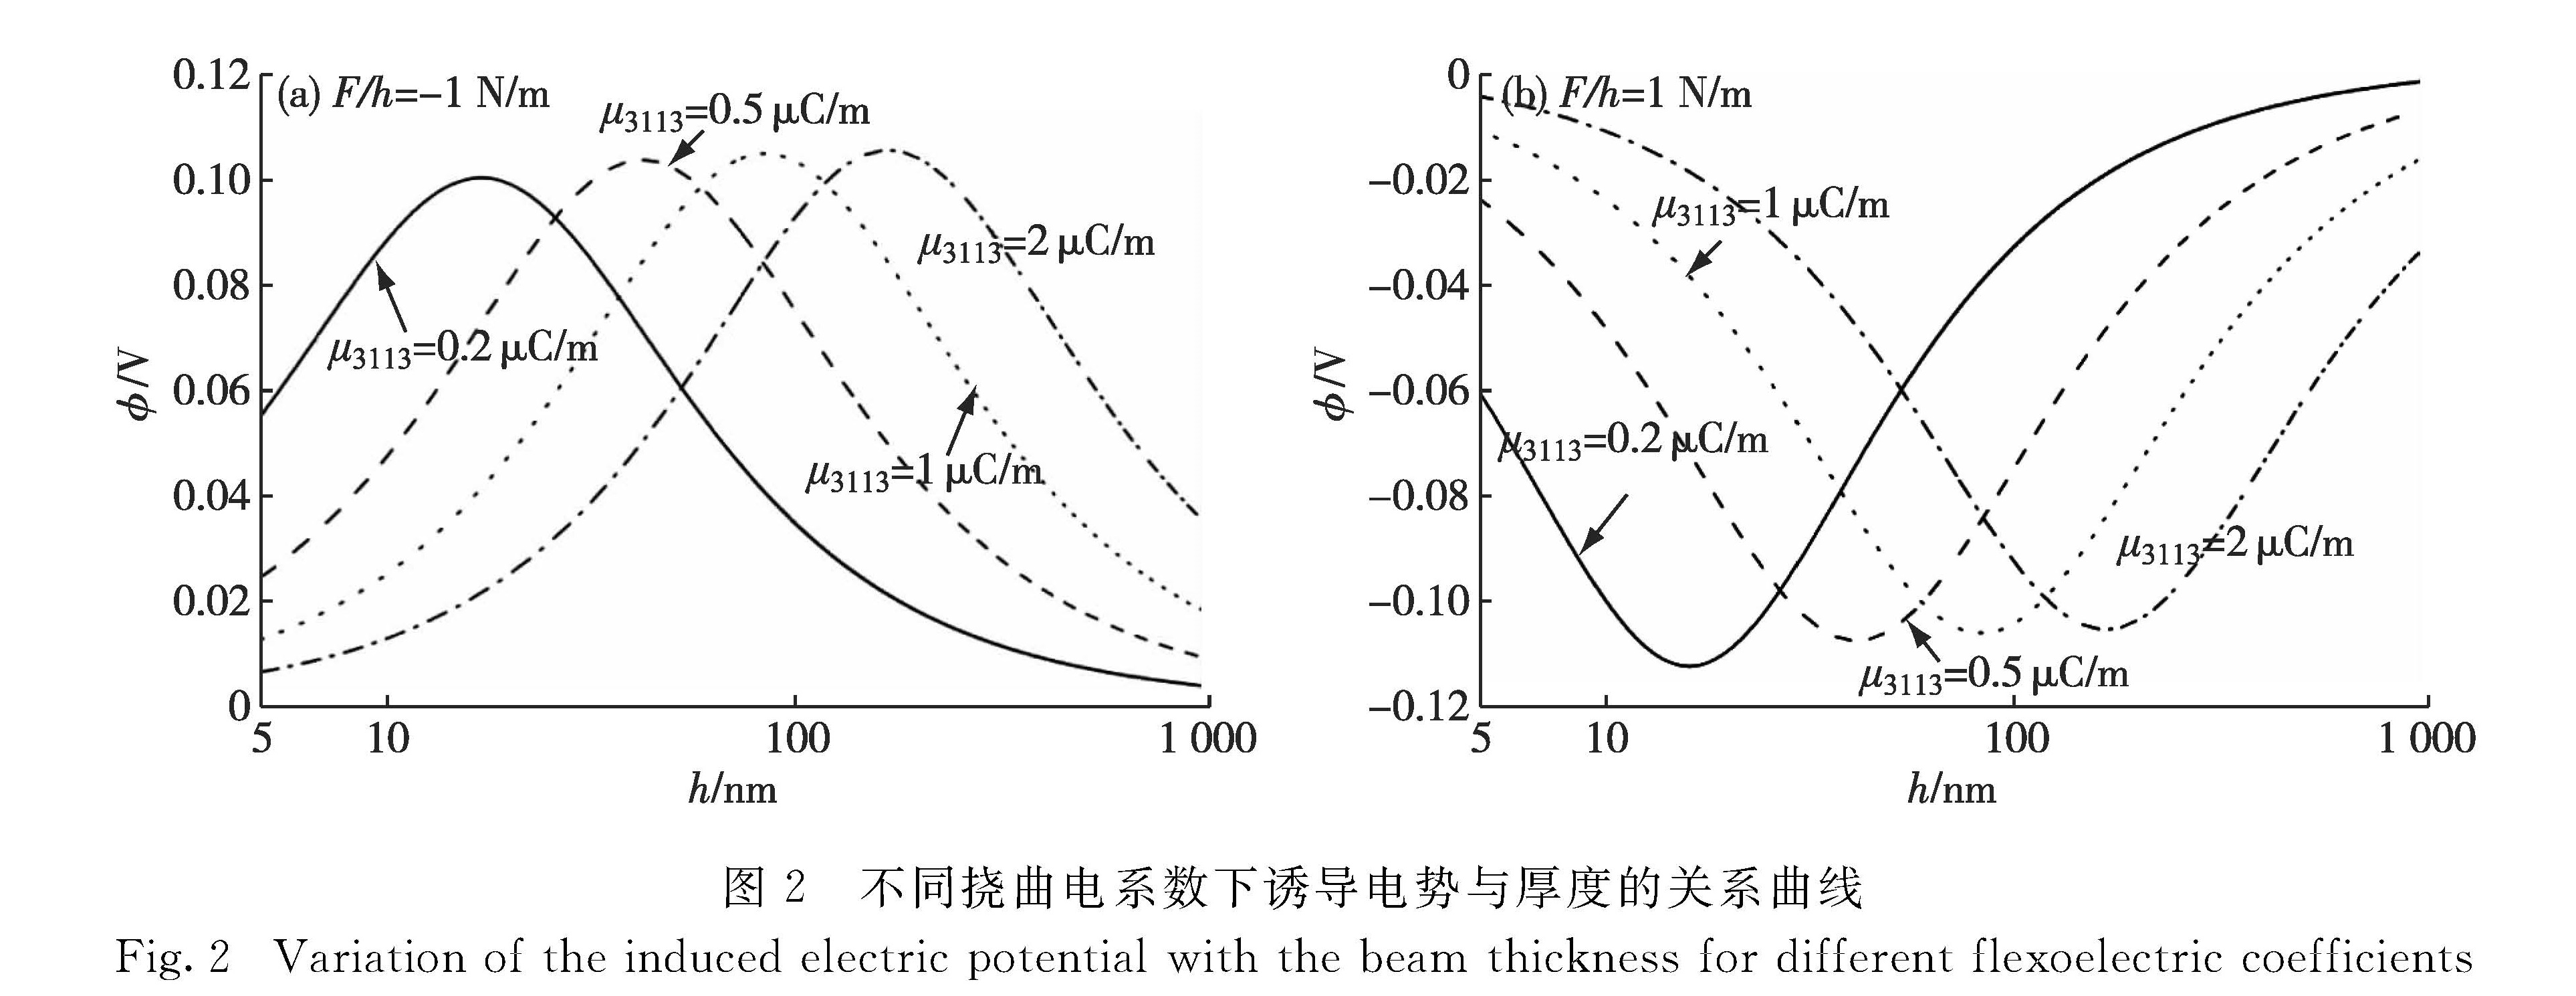 图2 不同挠曲电系数下诱导电势与厚度的关系曲线<br/>Fig.2 Variation of the induced electric potential with the beam thickness for different flexoelectric coefficients